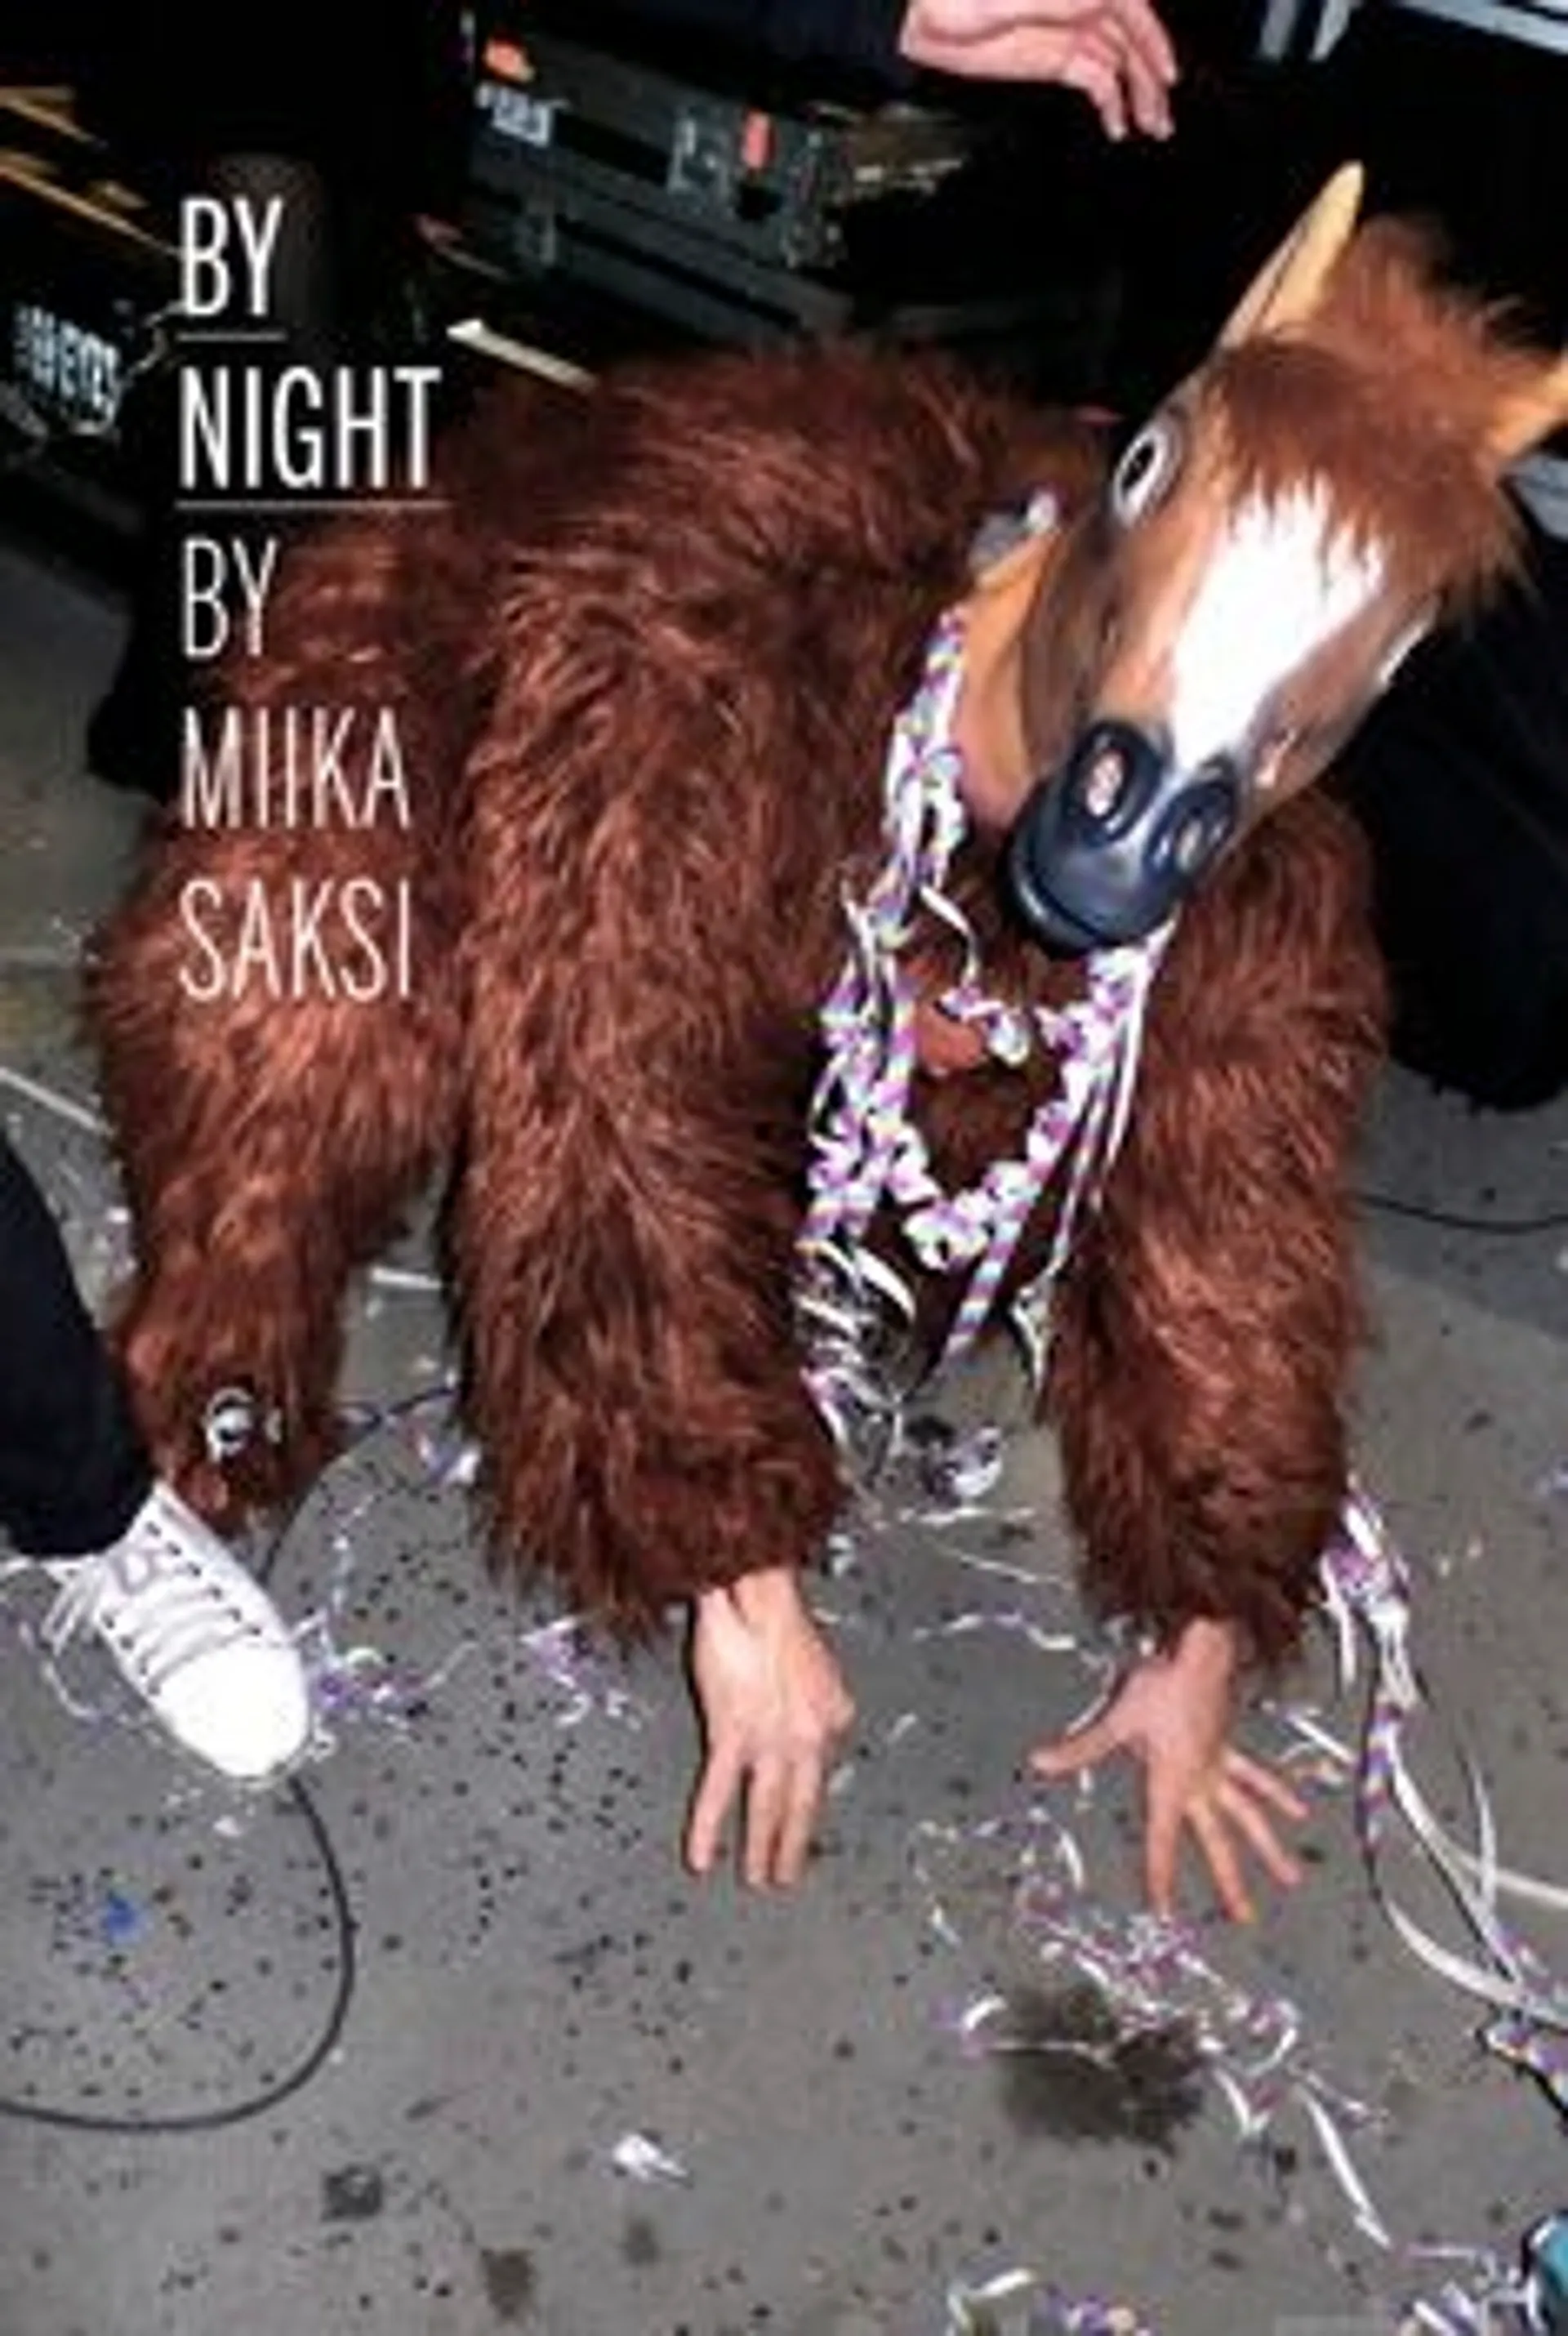 Saksi, By night by Miika Saksi